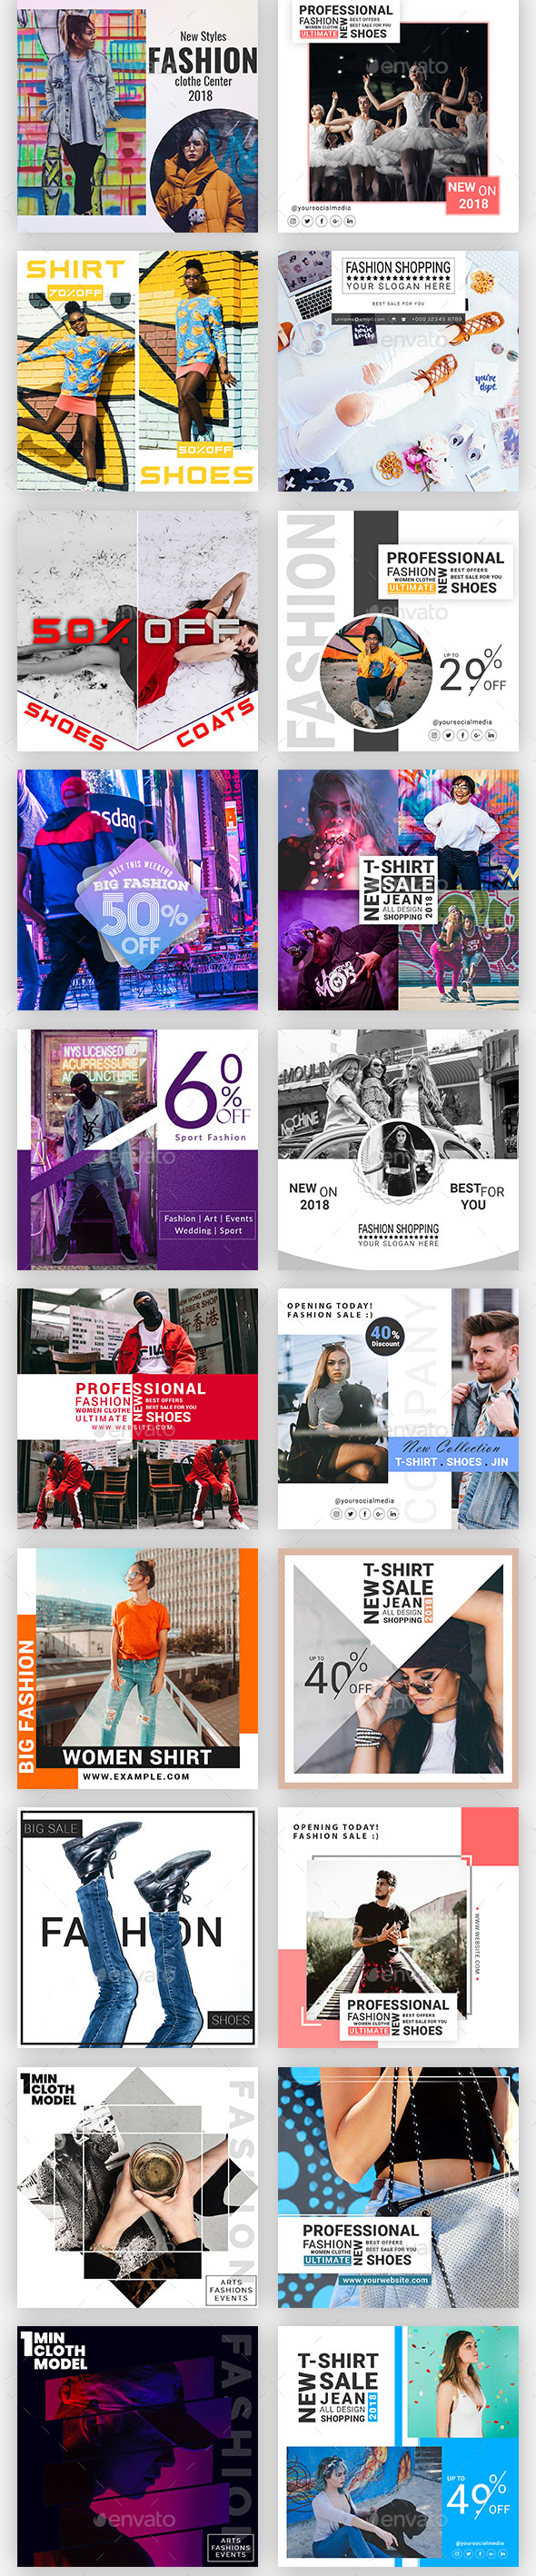 时尚简约的Instagram故事模板第一素材精选合辑 Instagram Post & Stories [psd,jpg]插图(5)